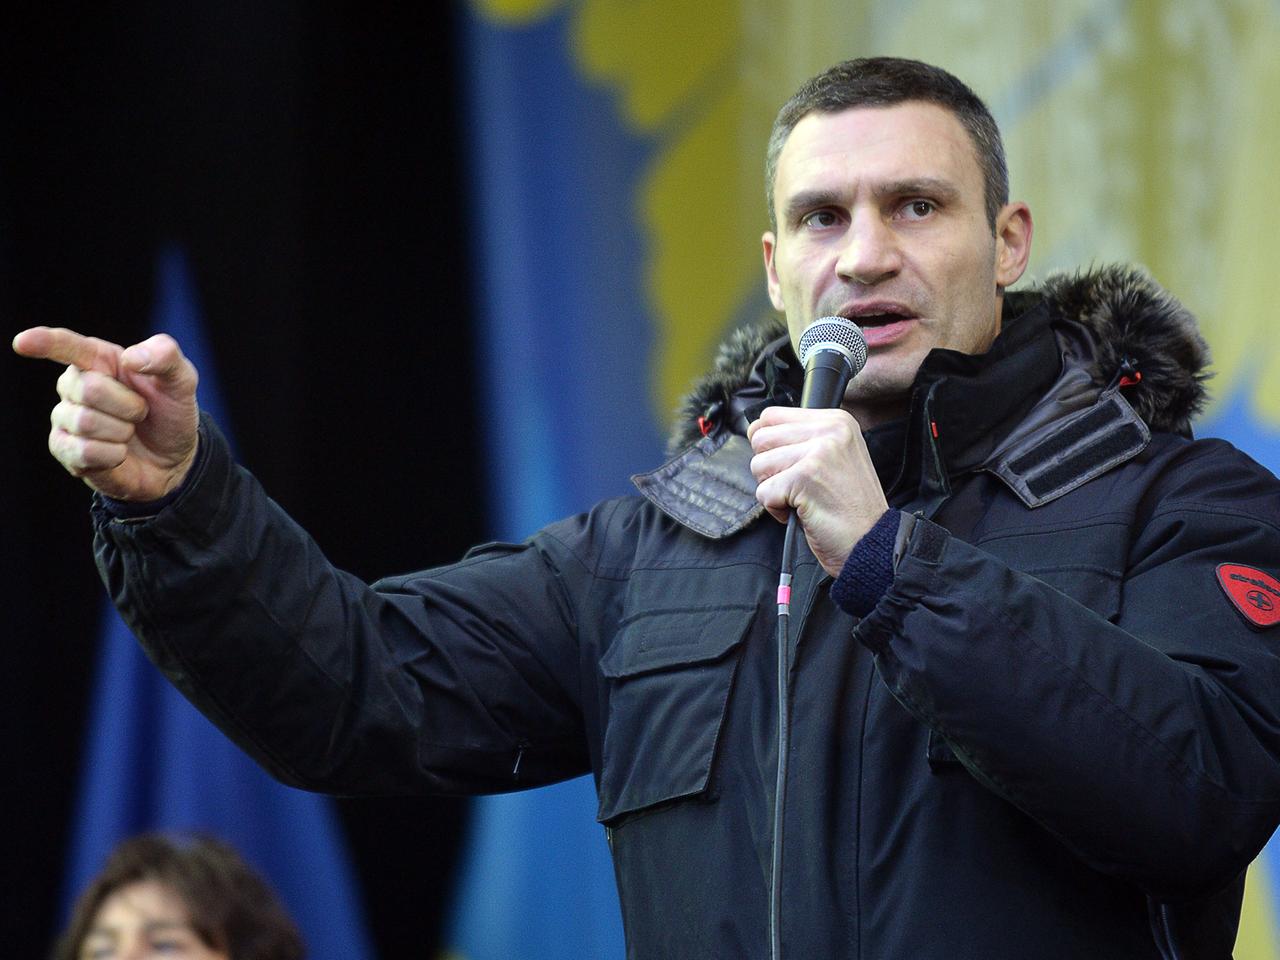 Der Chef der Oppositionspartei Udar, Vitali Klitschko, redet am 8.12.2013 bei einer Protestkundgebung in Kiew